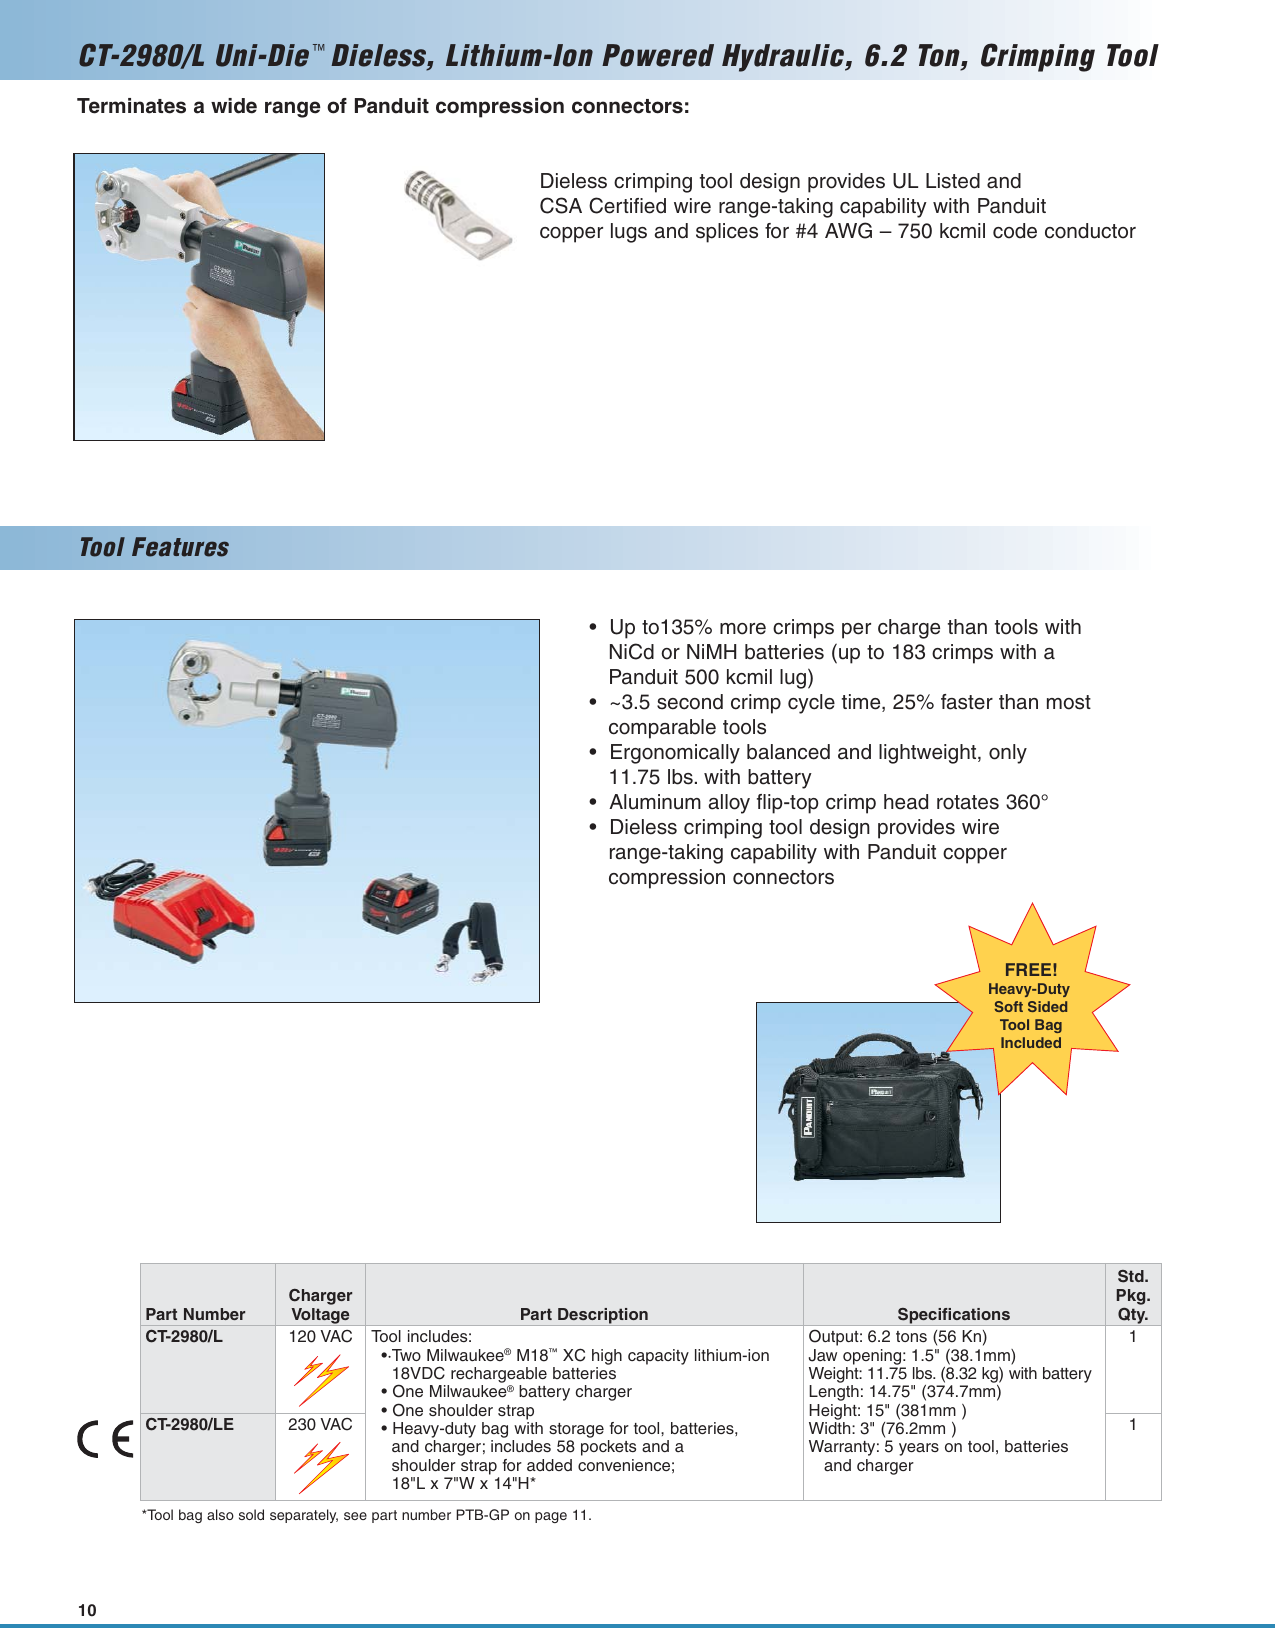 Page 10 of 12 - SA-PCCB12 (Lithium-Ion Powered Crimping Tools).qxp